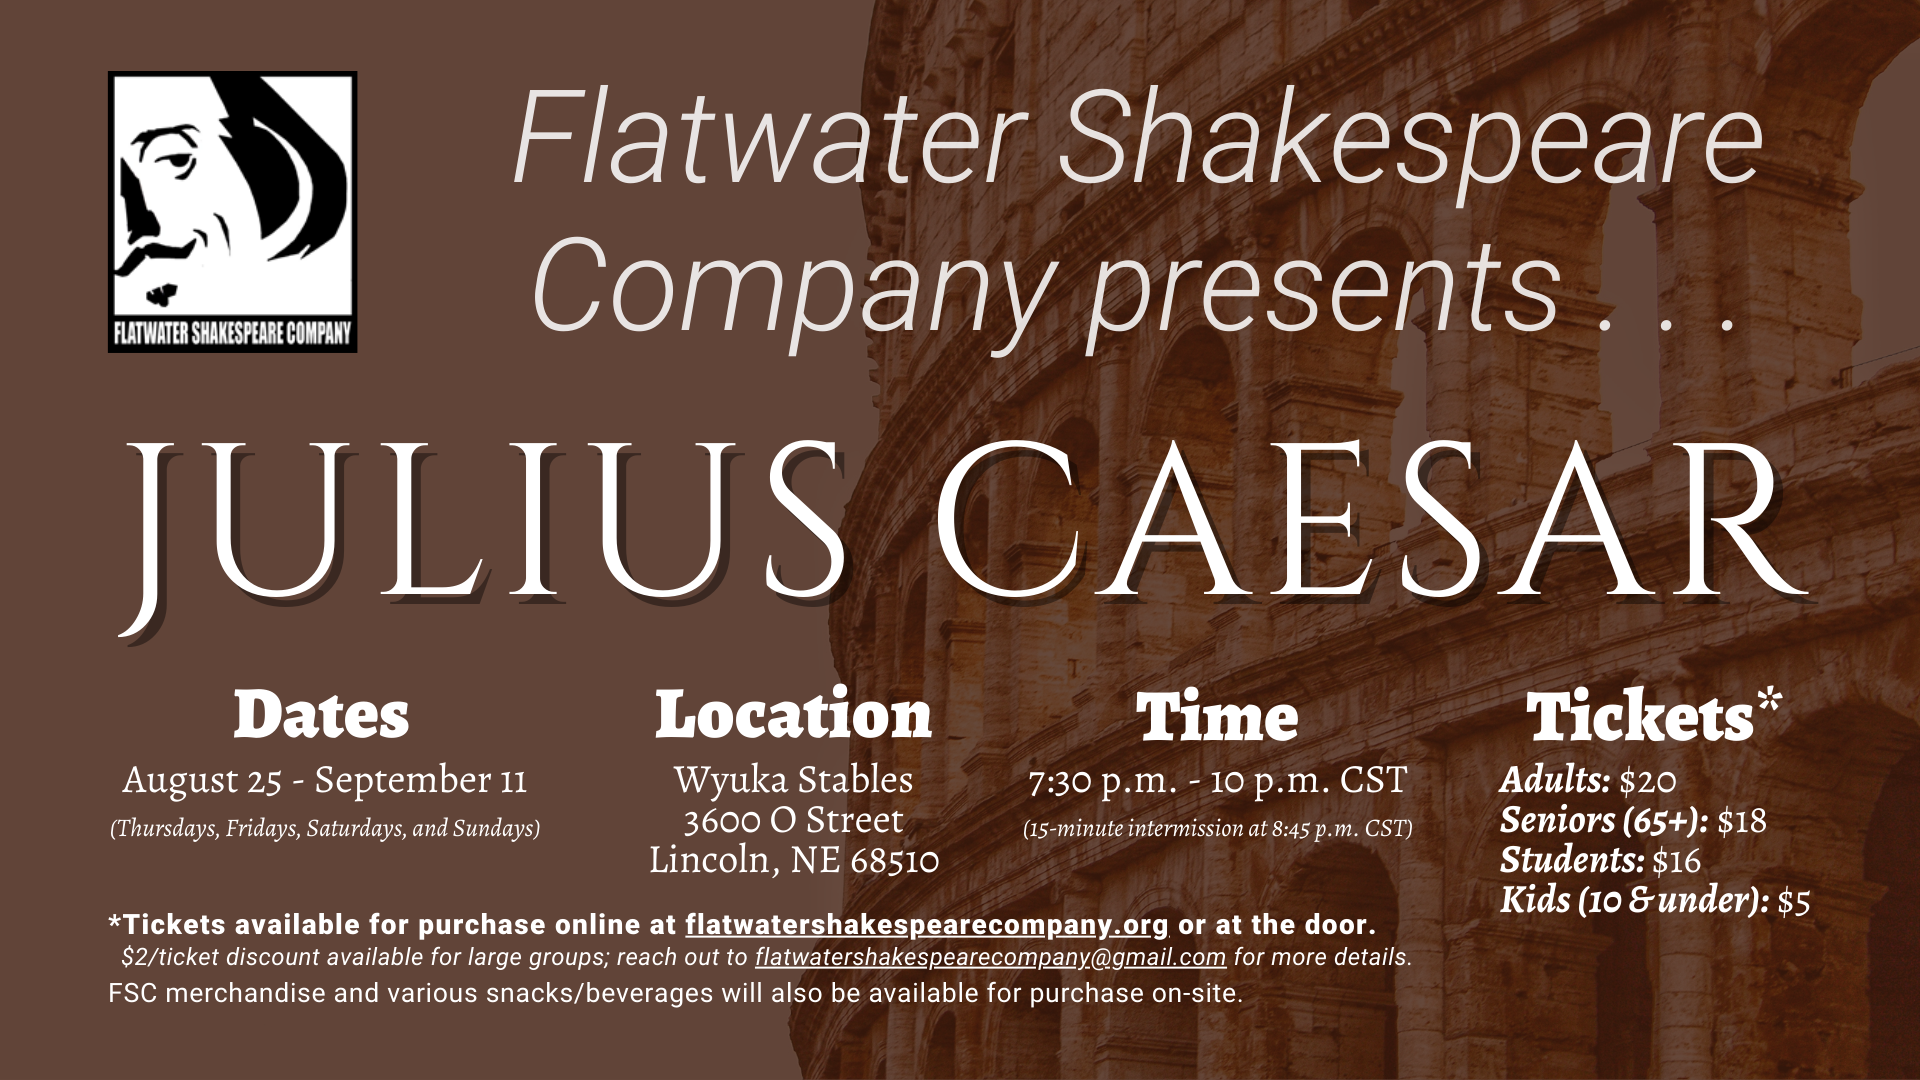 #06STU –– STUDENT: Fri. Sept. 2, 2022 | 7:30 p.m. - 10 p.m. CST | Wyuka Stables (Julius Caesar)